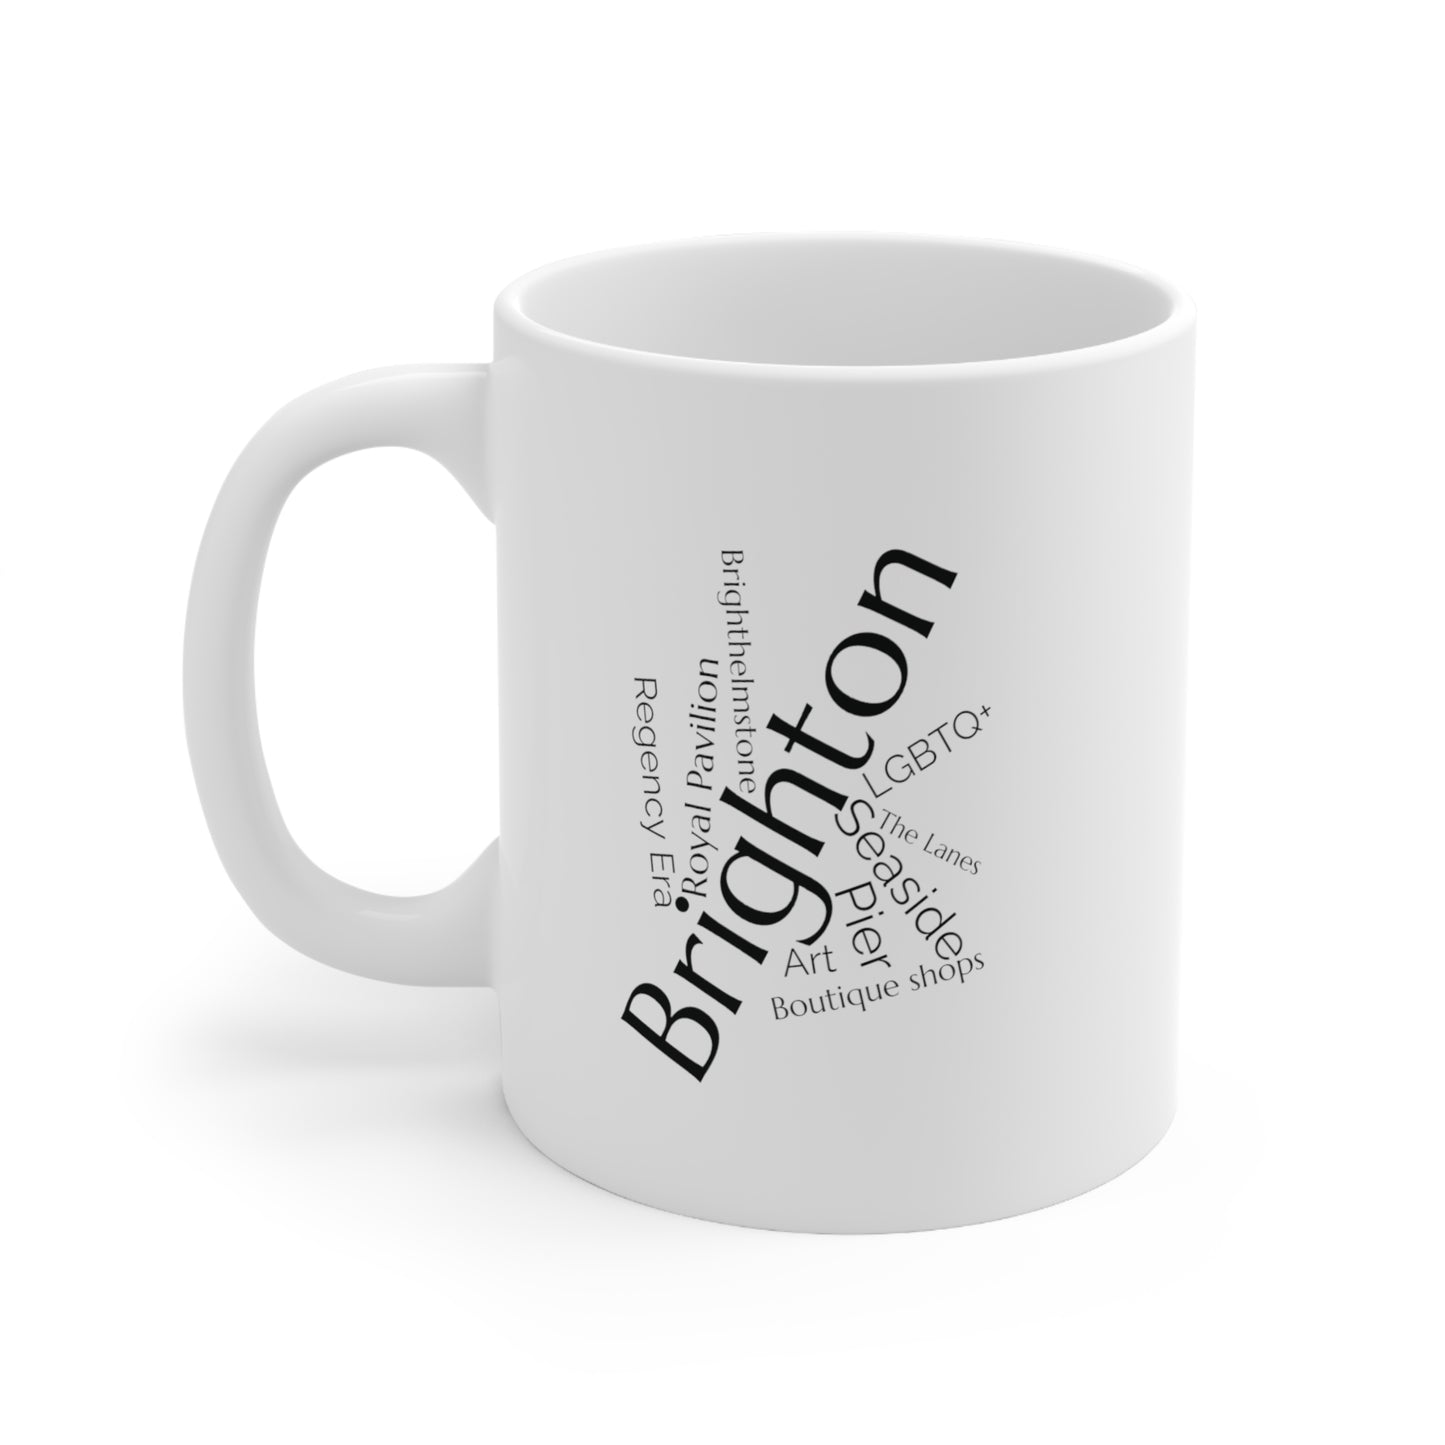 Brighton word mug, local mug, geography mug, gift, mug, coffee cup, word mug, wordcloud mug, christmas gift, birthday gift